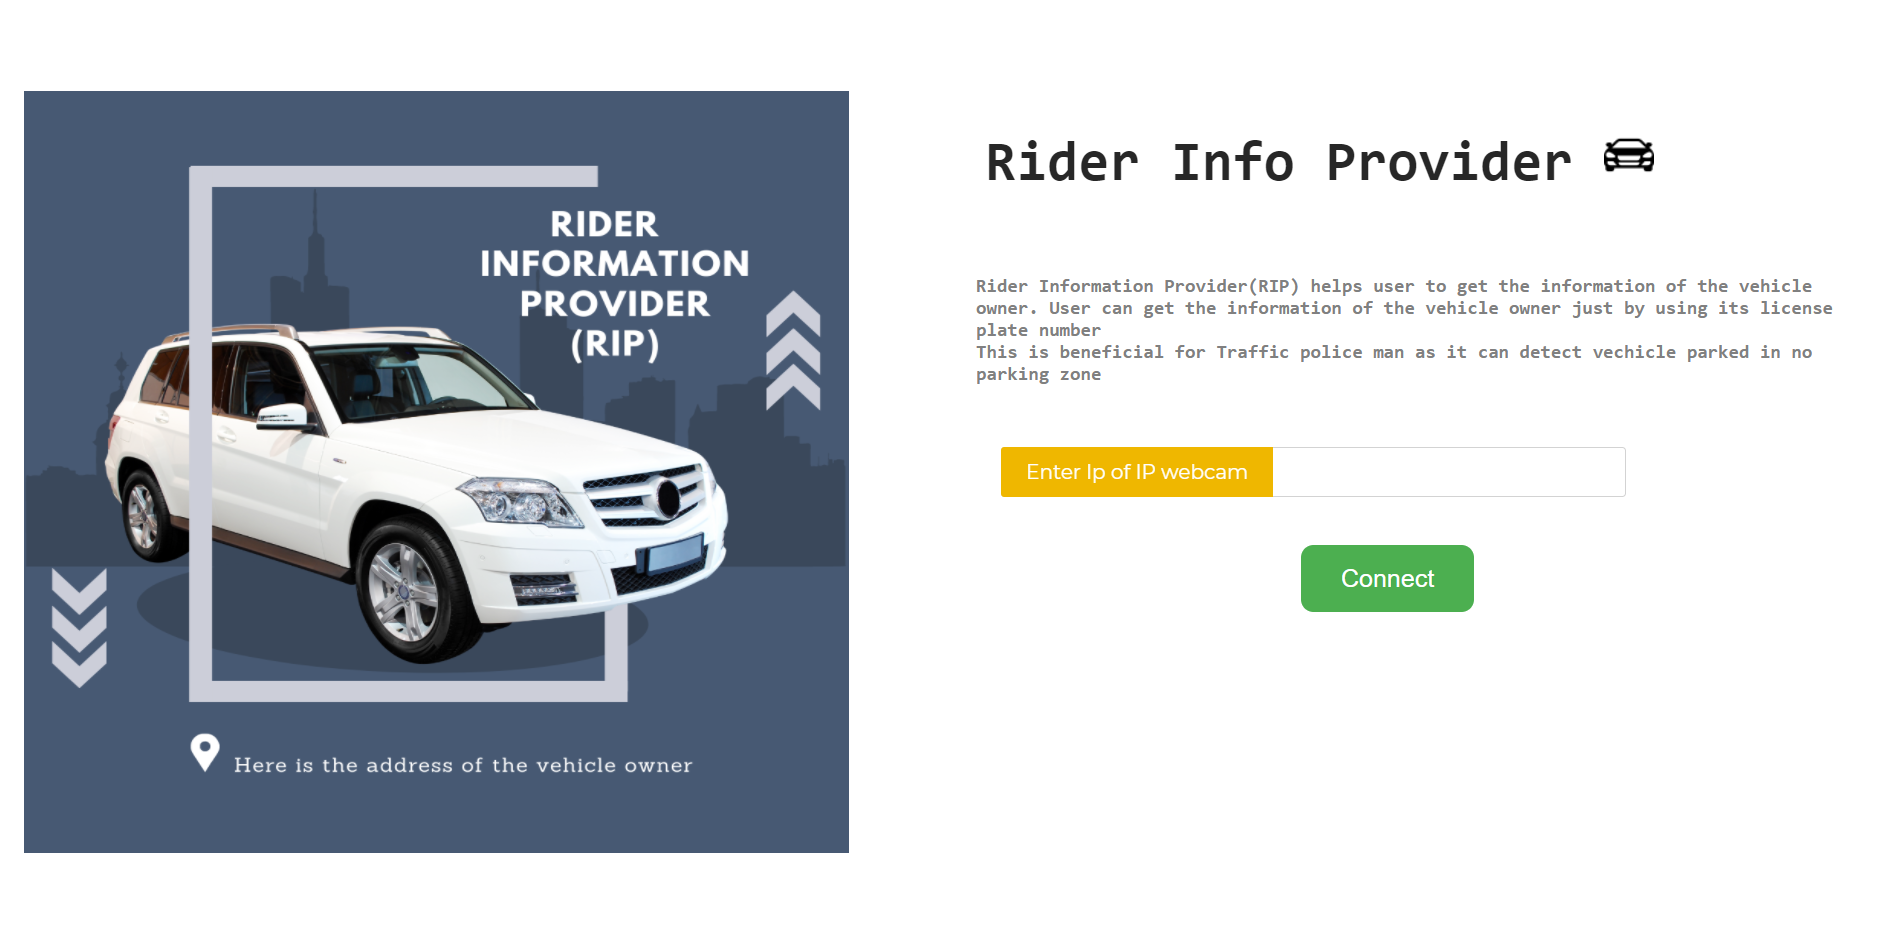 Rider Information Provider